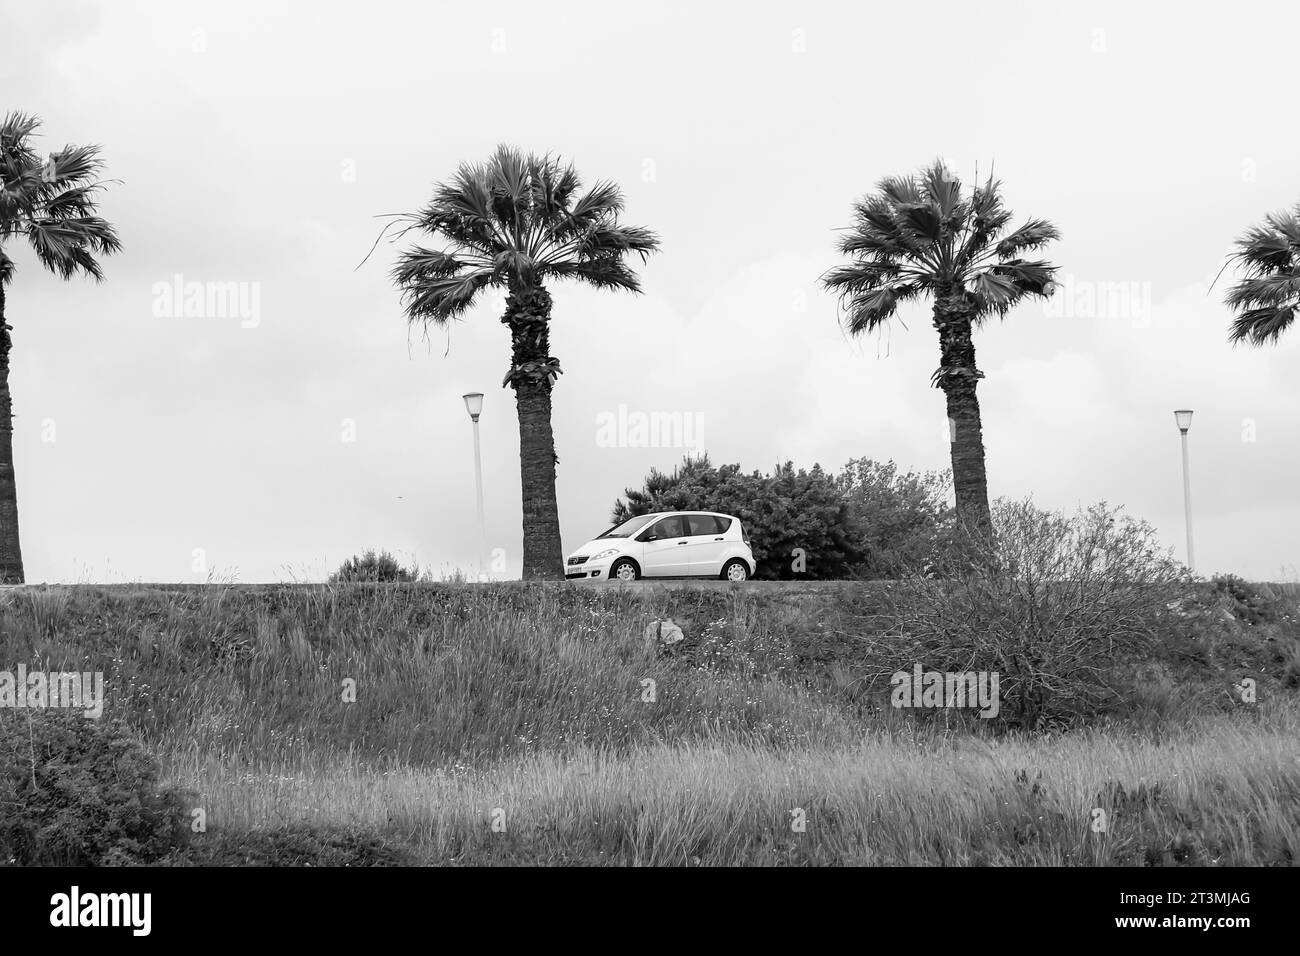 Weißer Kleinwagen der Mercedes-Benz A-Klasse der frühen Generation, der zwischen Palmen geparkt ist, die eine Straße vor einem grünen Feld in Schwarz-weiß säumen Stockfoto